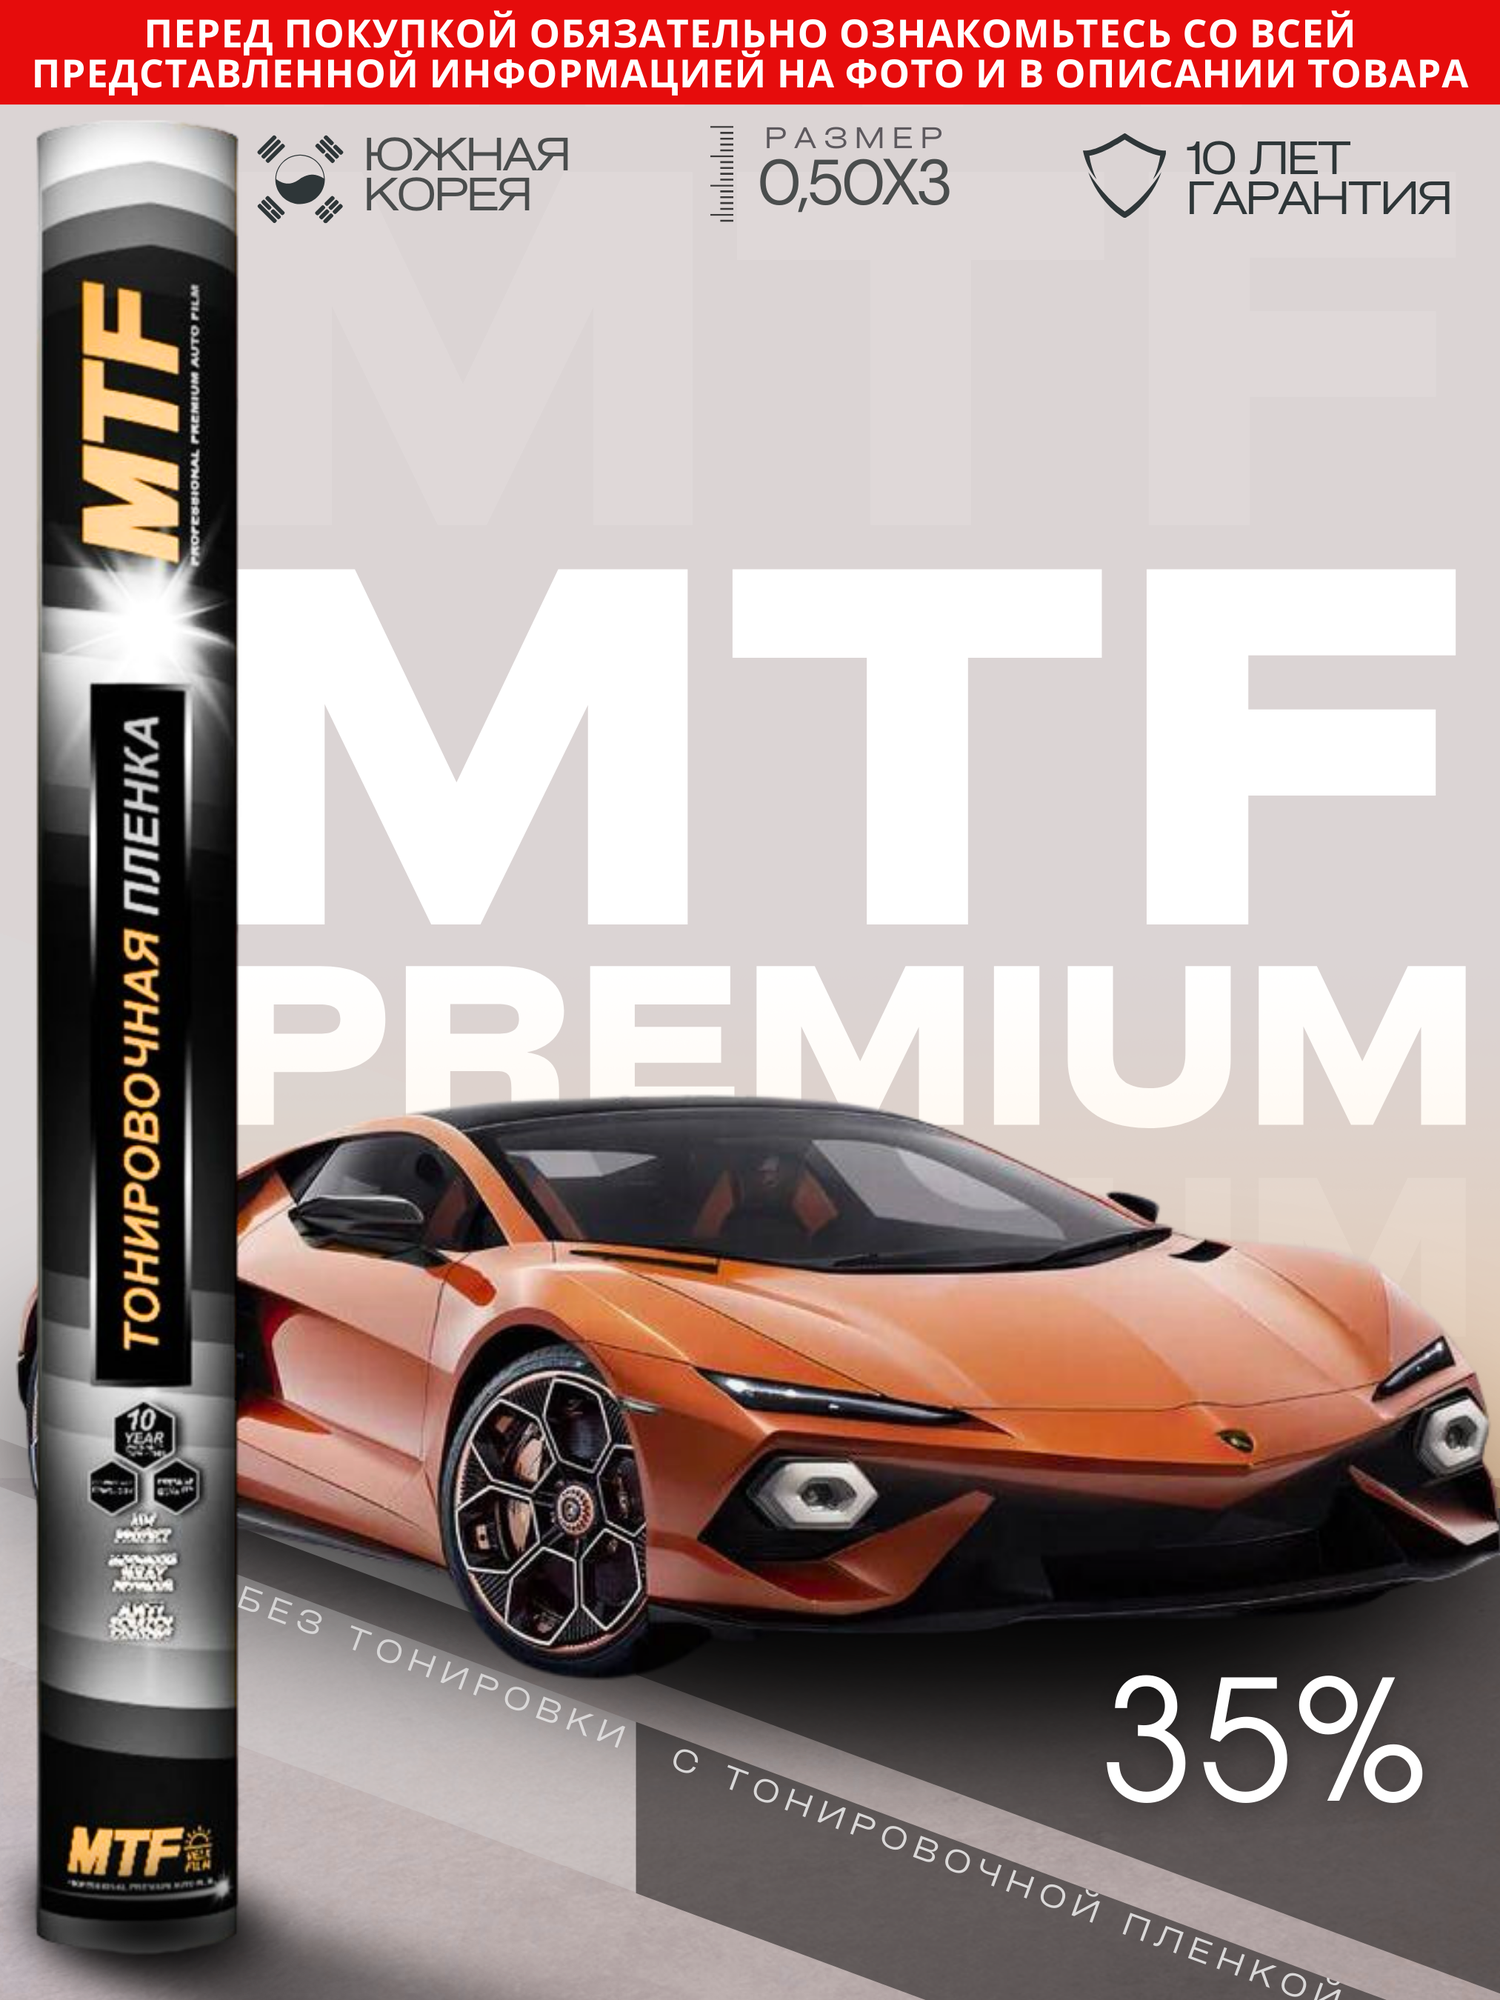 Пленка тонировочная "MTF Original" в тубе "Premium" 35% Сharcol (0.5м х 3м) /20